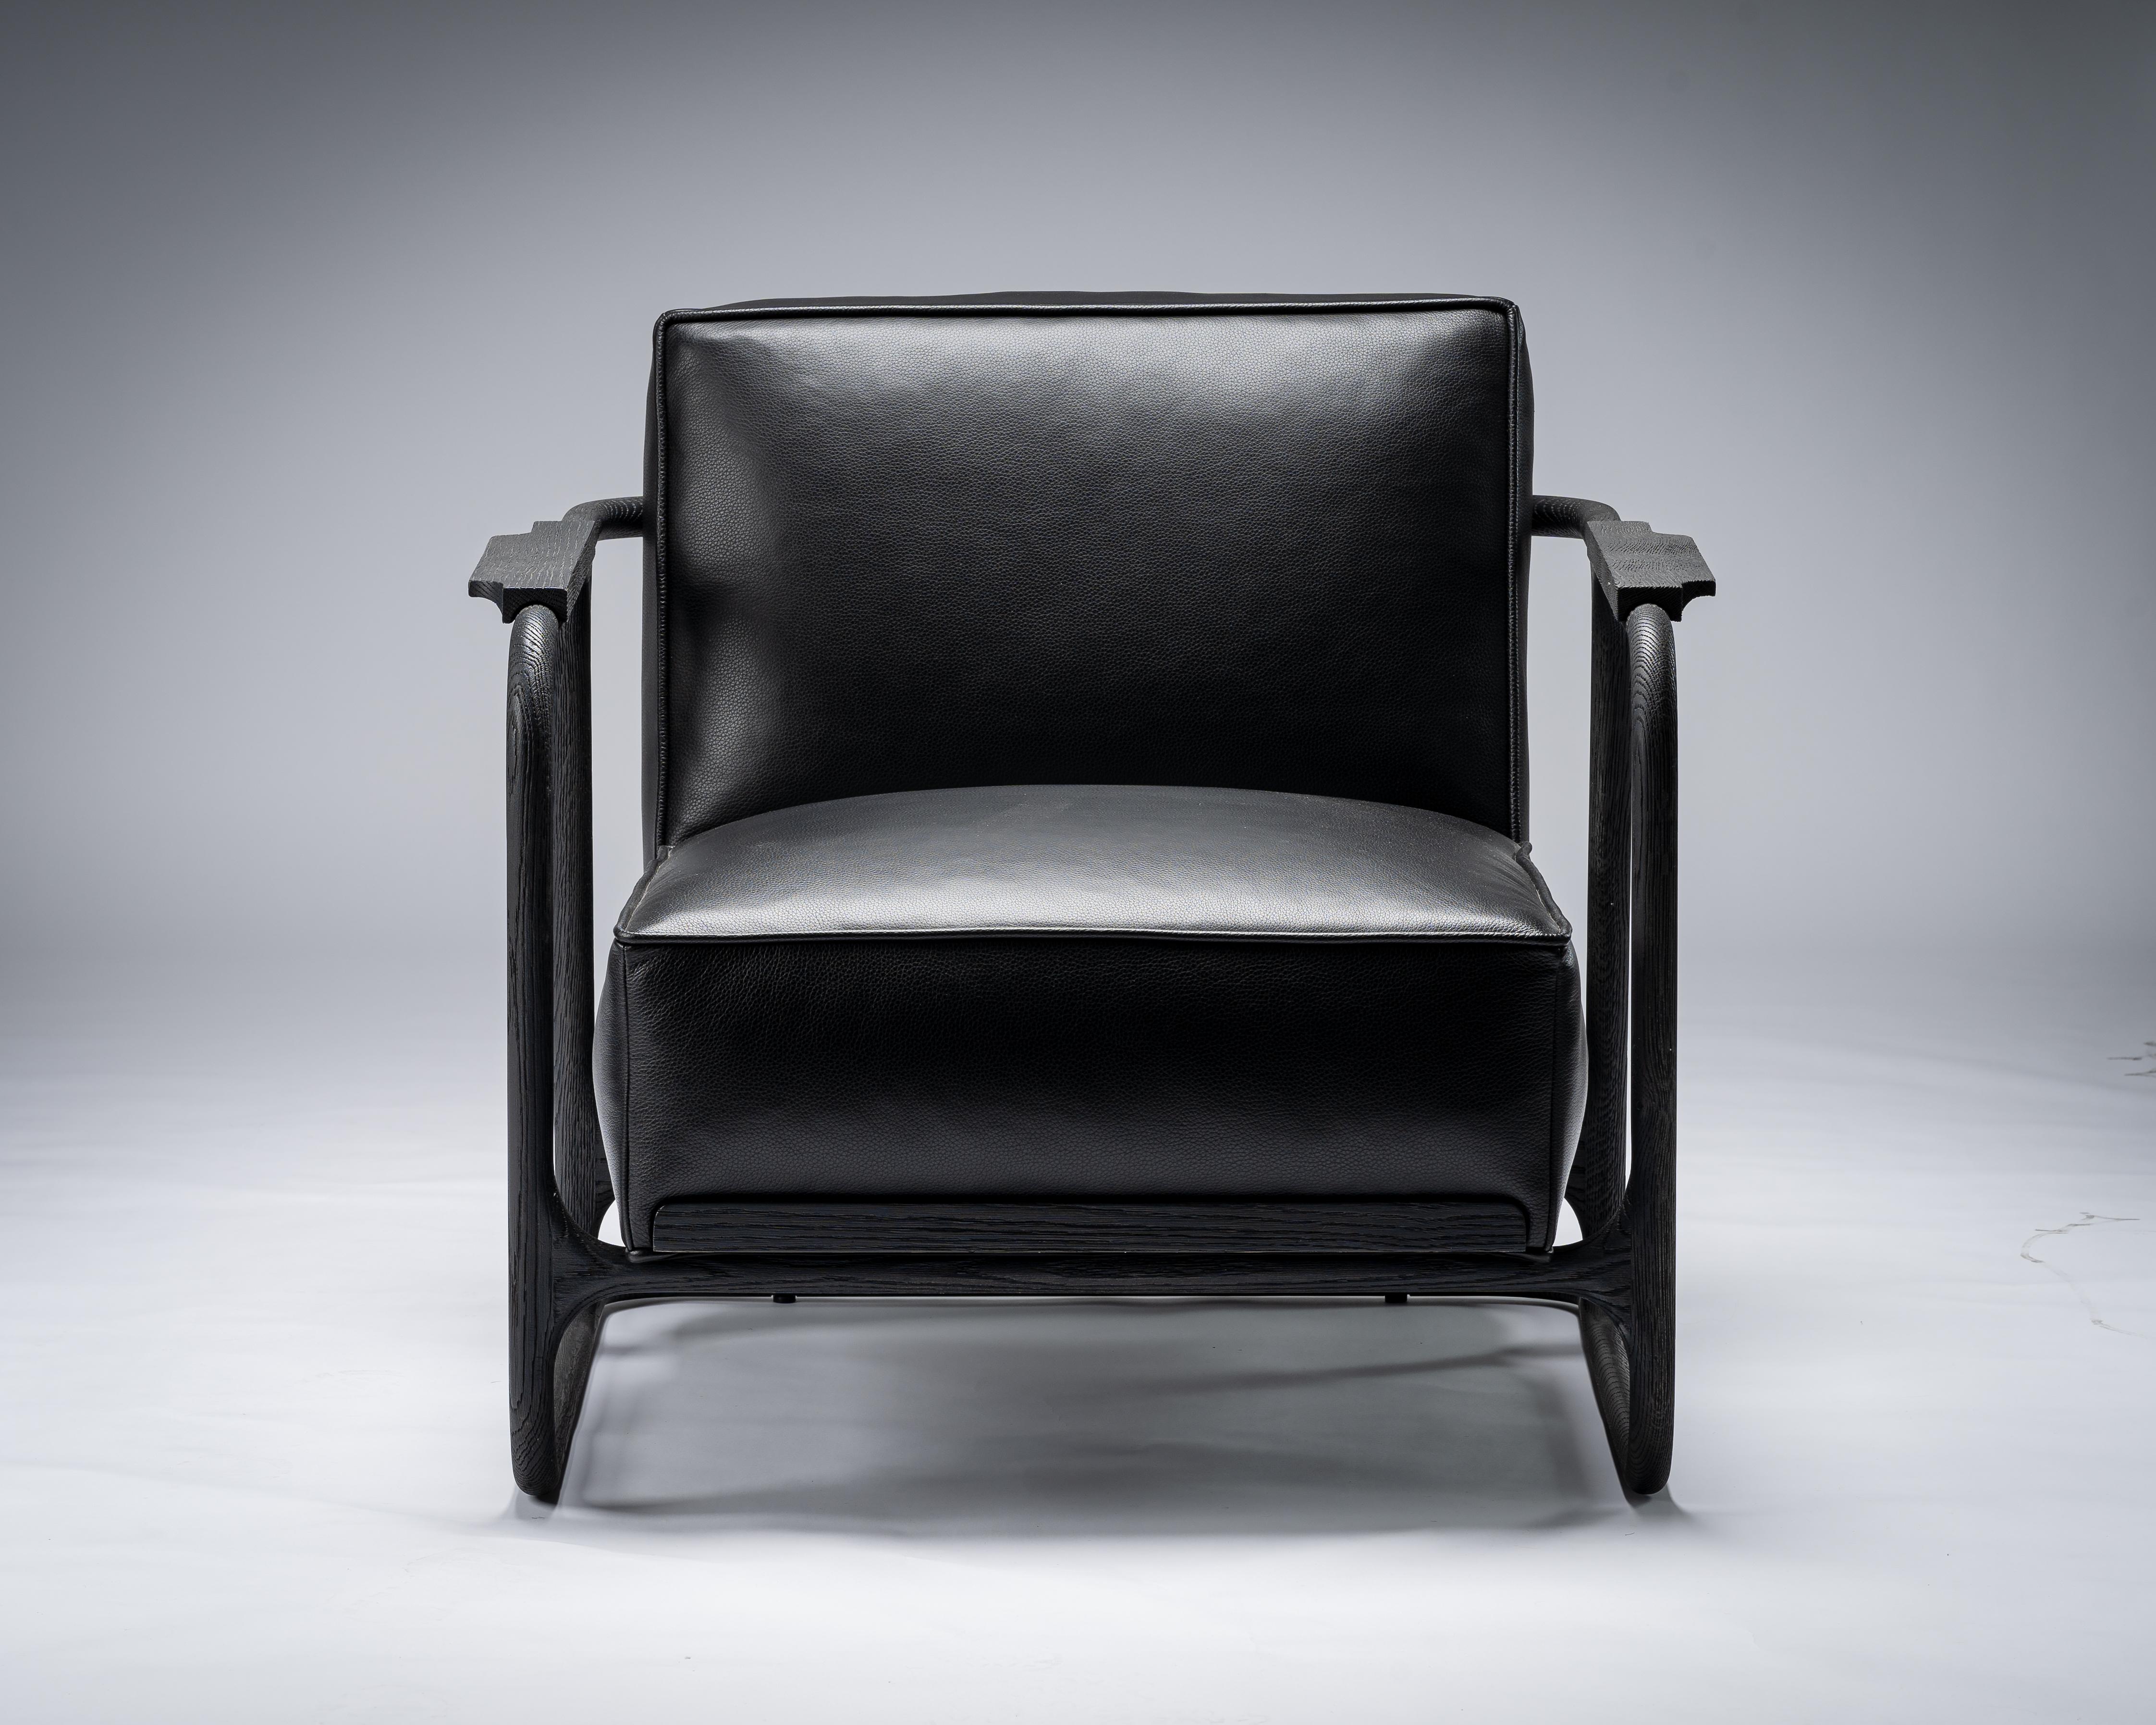 Chaise noire ALFRED de Mandy Graham

ALFRED
A01, fauteuil de salon
Noyer / chêne sablé et cuir
Mesures : 33.75